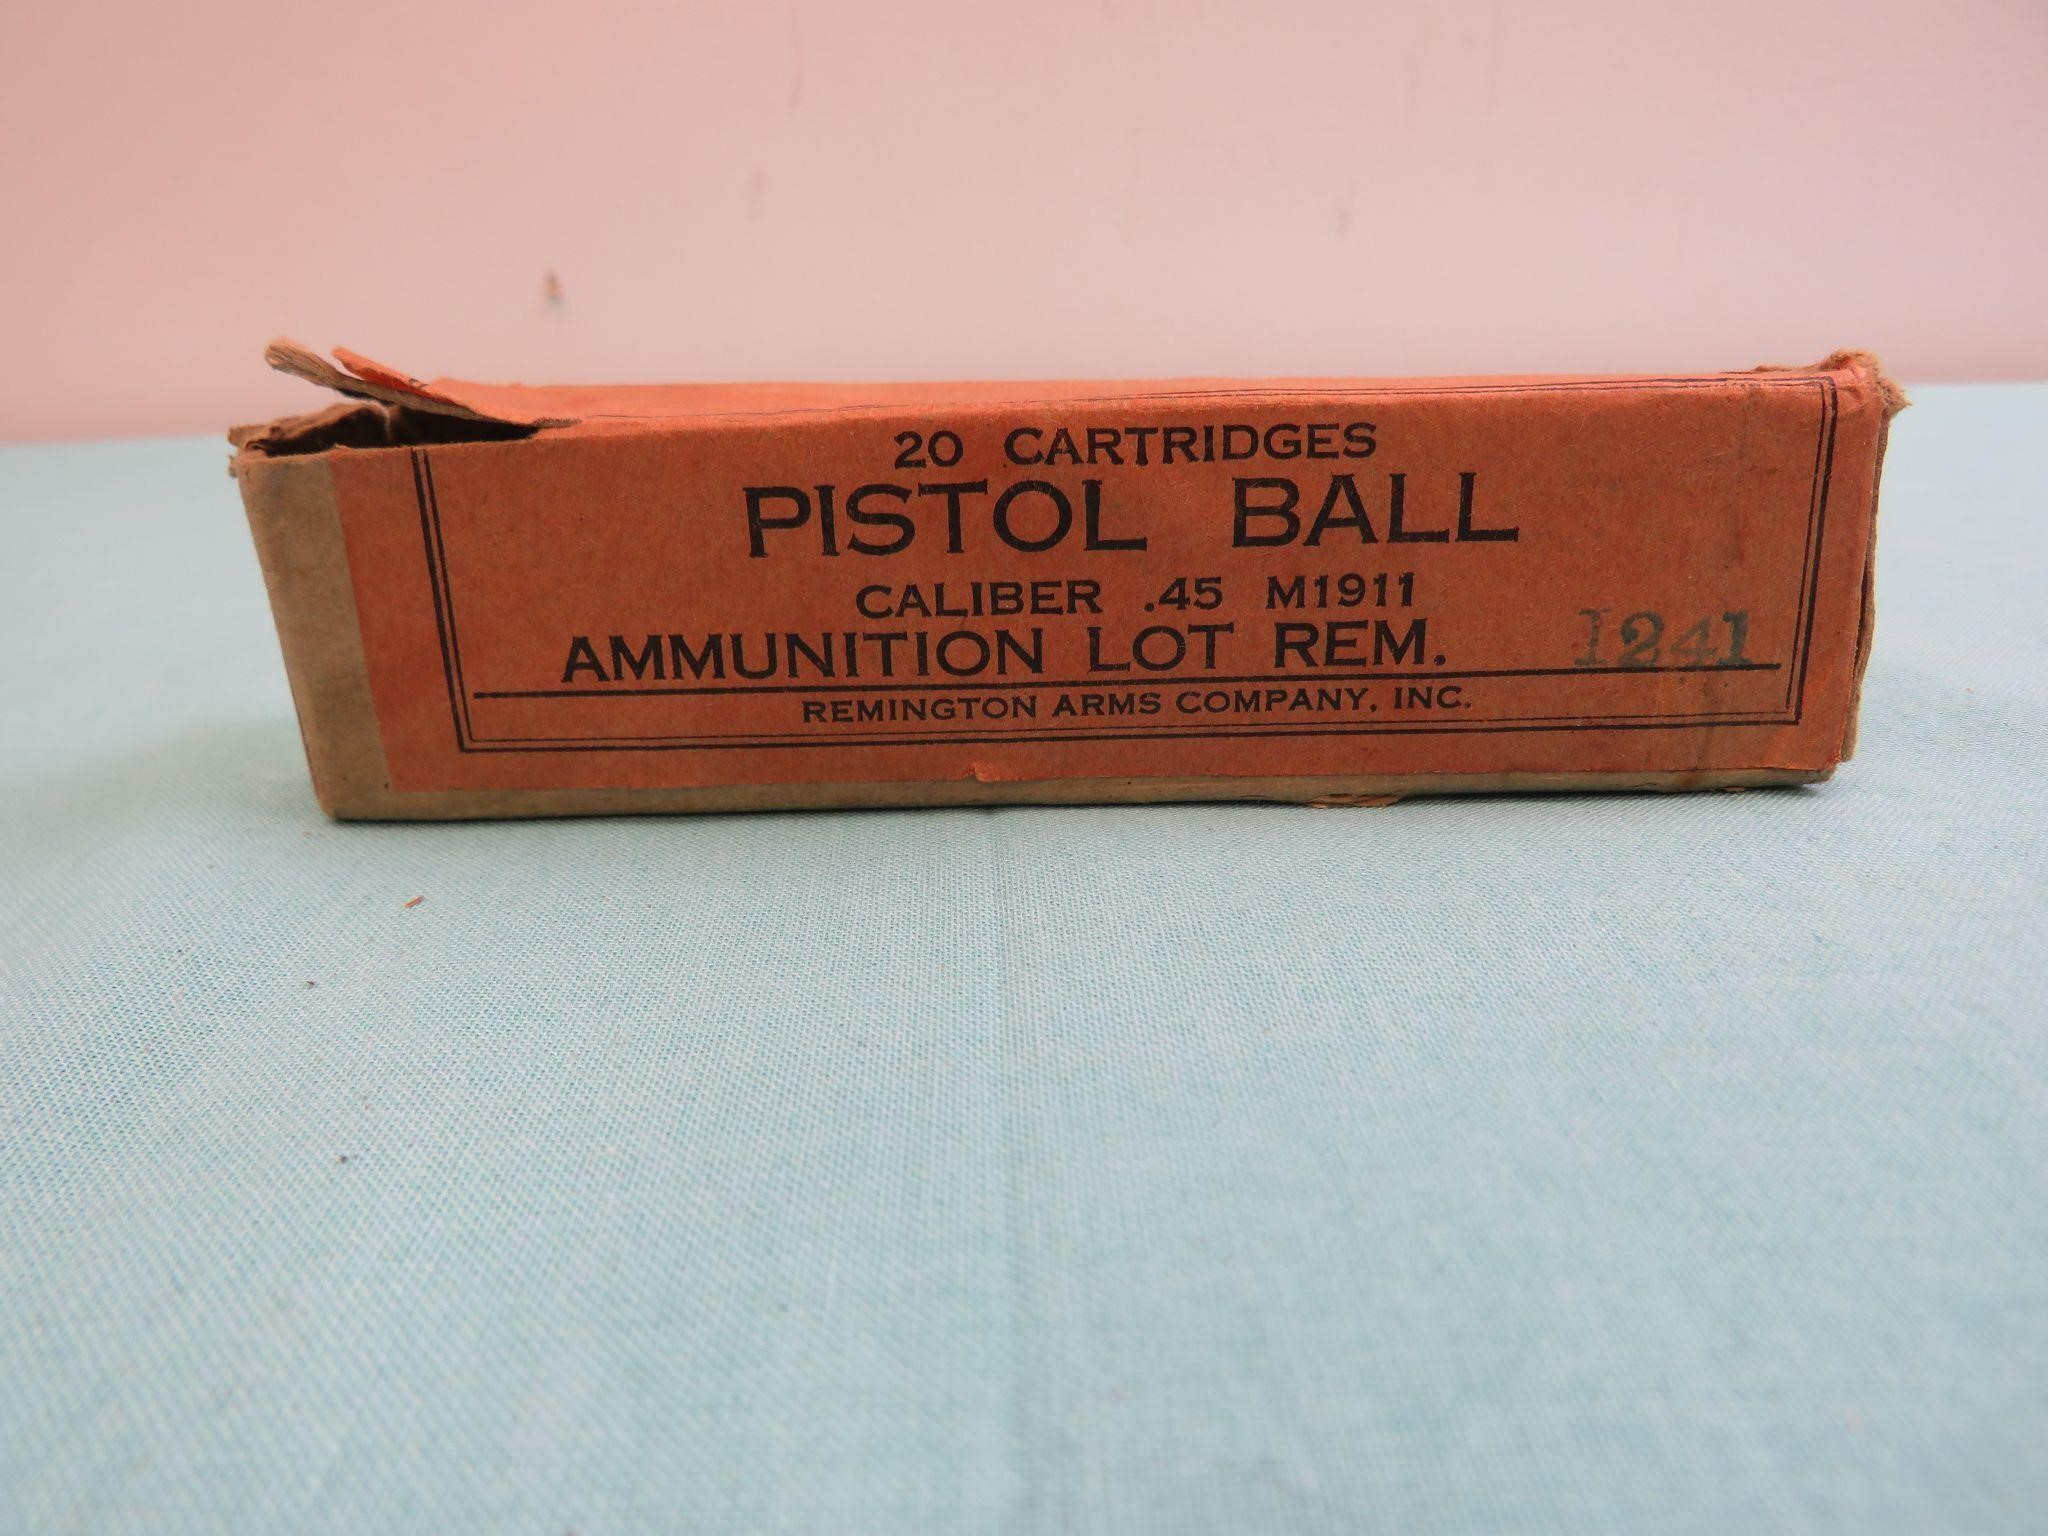 Pistol Ball Ammo